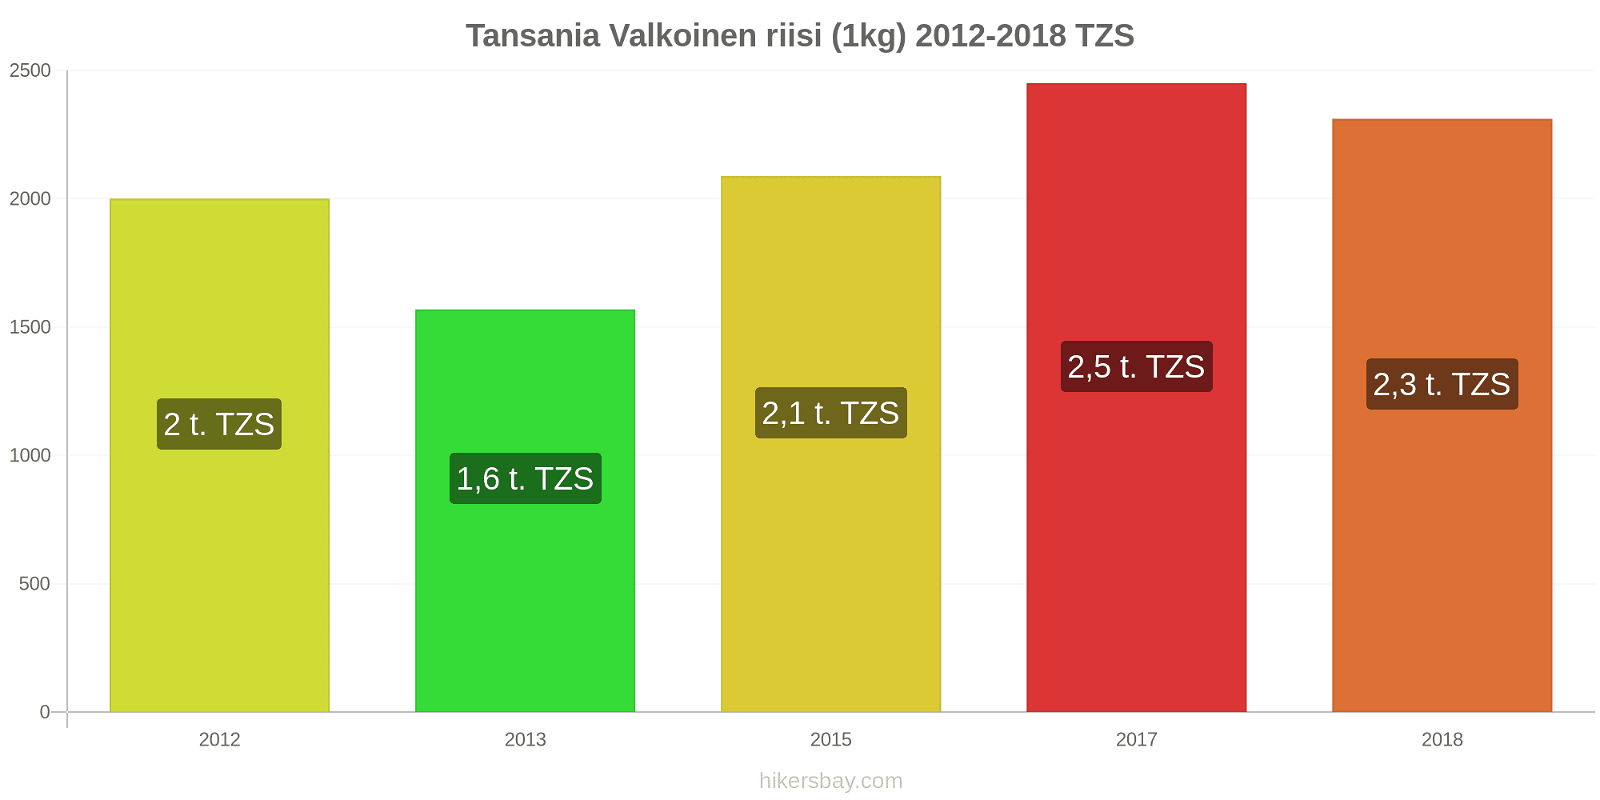 Tansania hintojen muutokset Valkoinen riisi (1kg) hikersbay.com